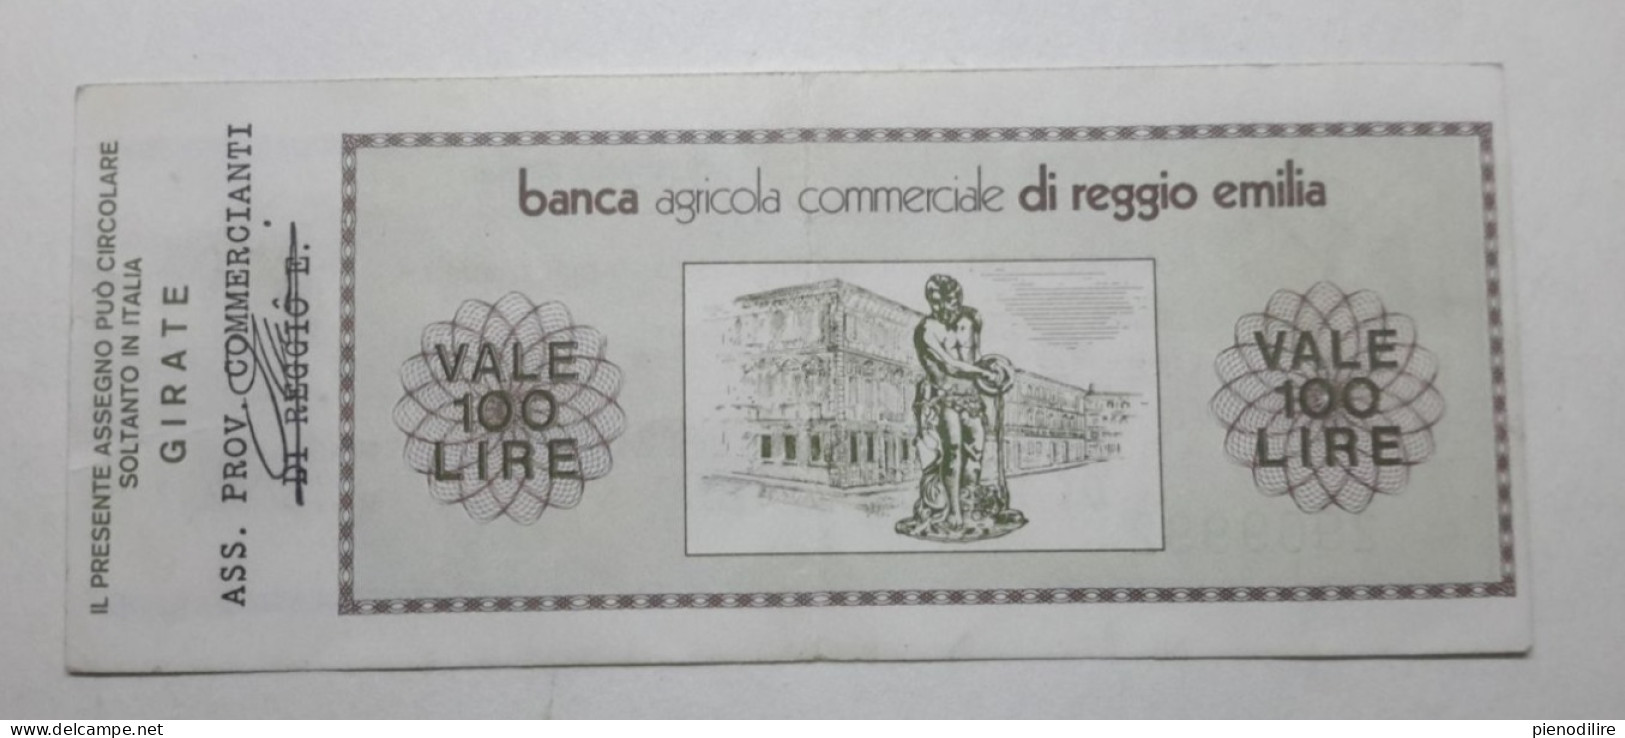 BANCA AGRICOLA COMMERCIALE DI REGGIO EMILIA, 100 Lire 01.06.1976 Ass. Prov. Commercianti (A1.42) - [10] Cheques Y Mini-cheques